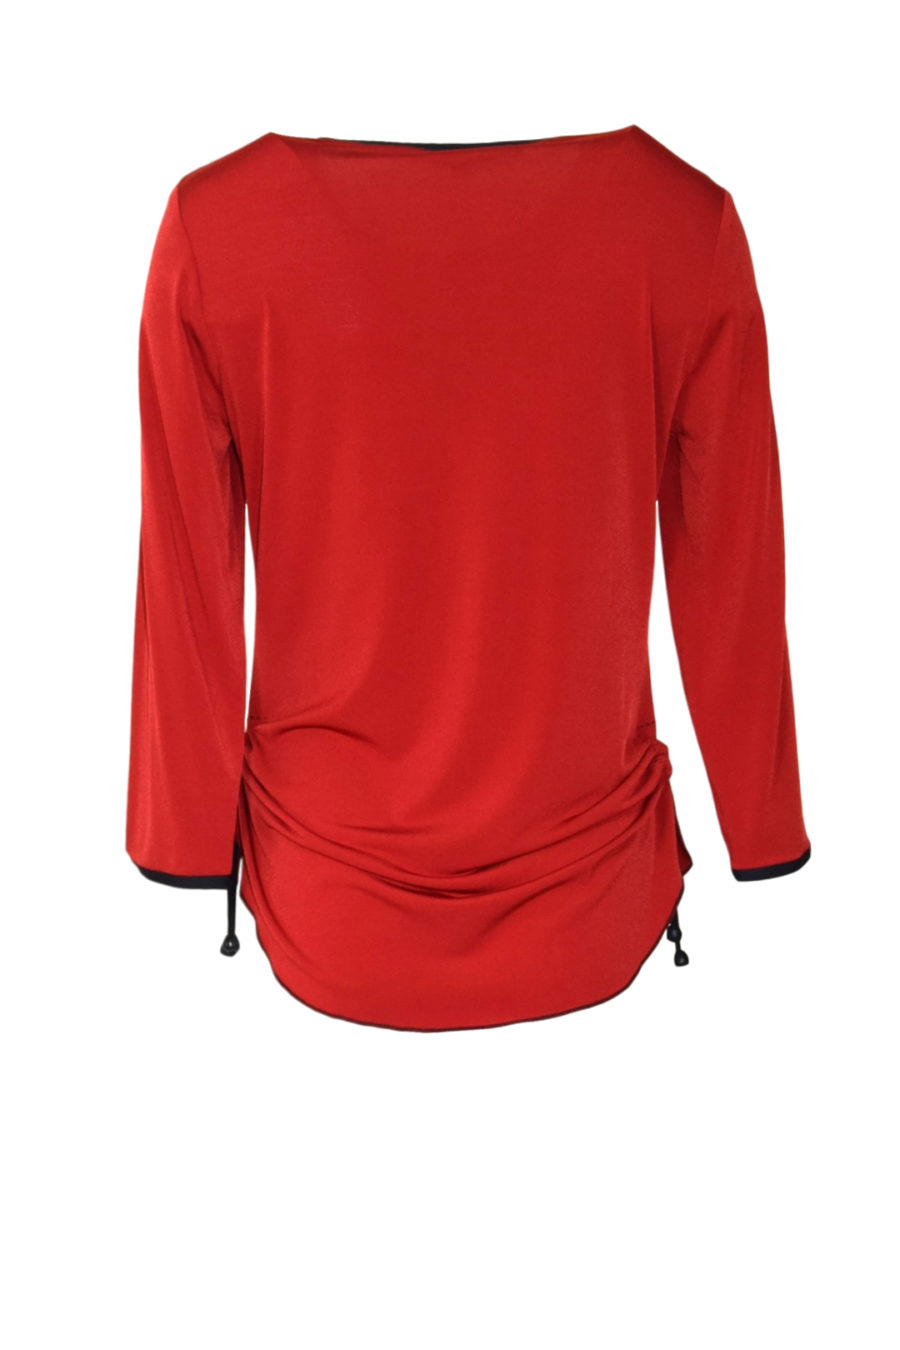 Shirt rot mit schwarzen Kontrasten